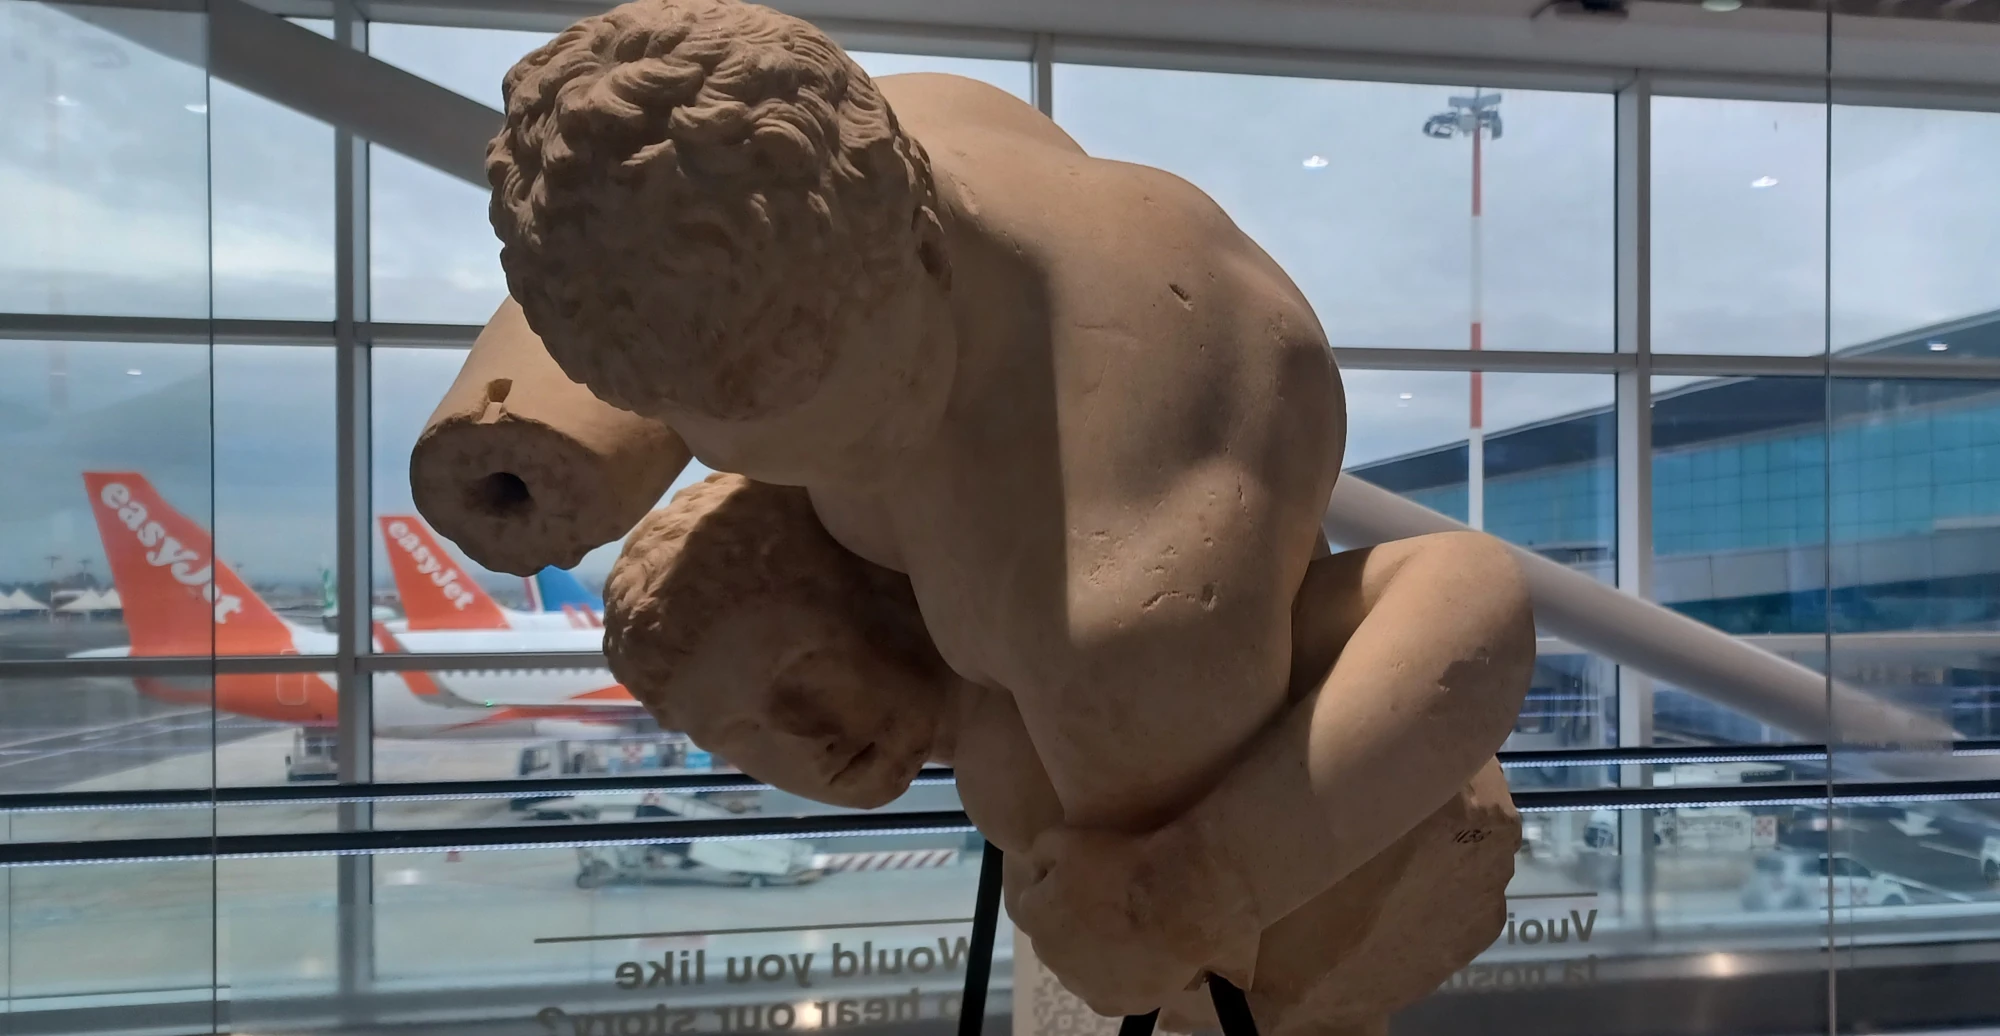 luchadores escultura antigua aeropuerto fiumicino